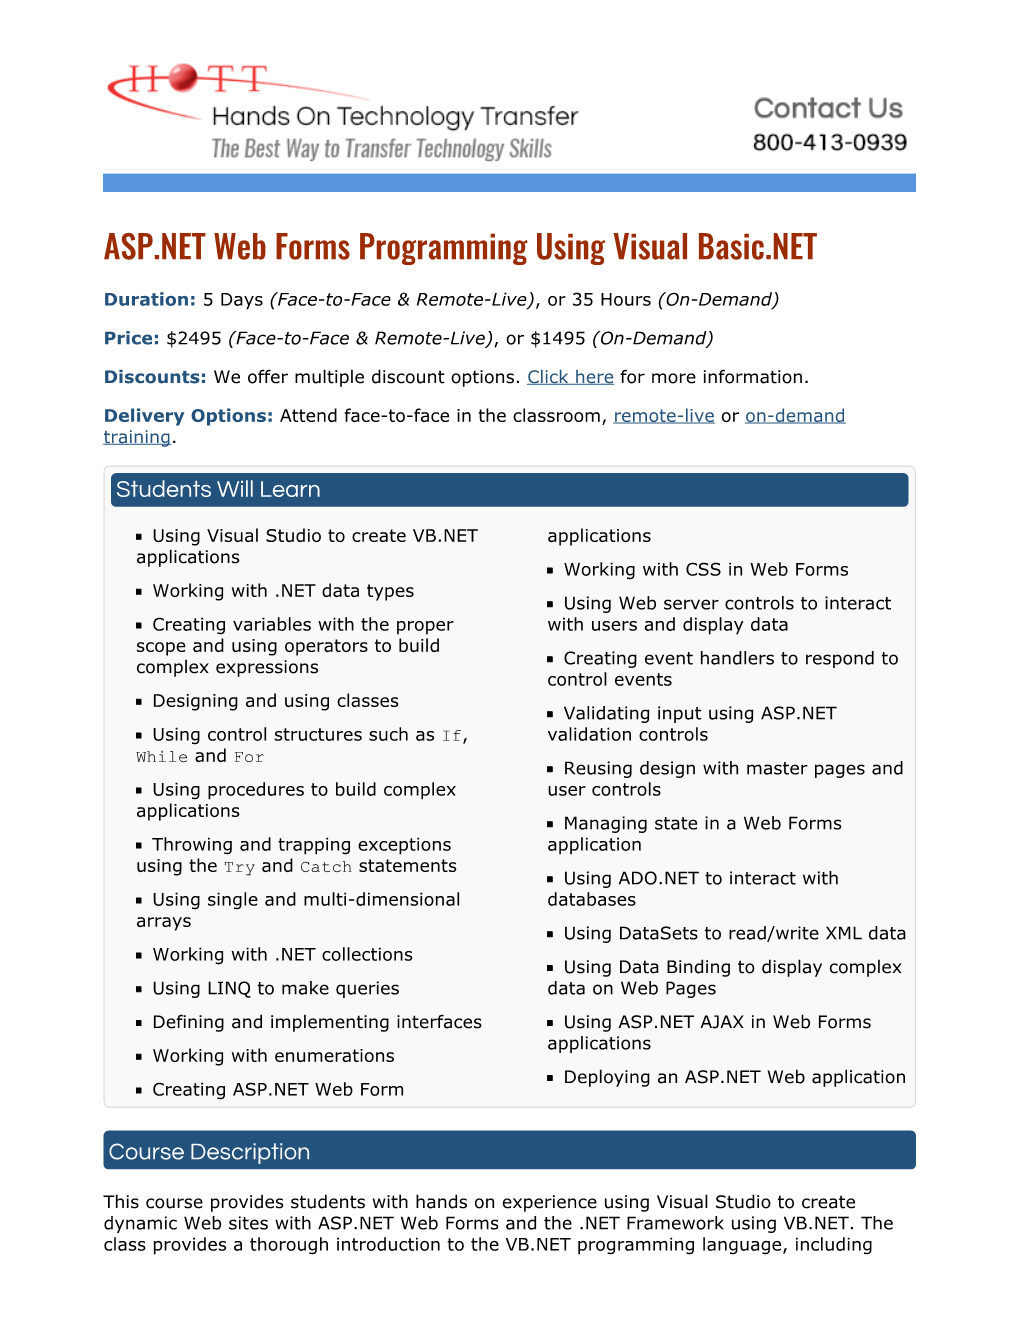 ASP.NET Web Forms Course